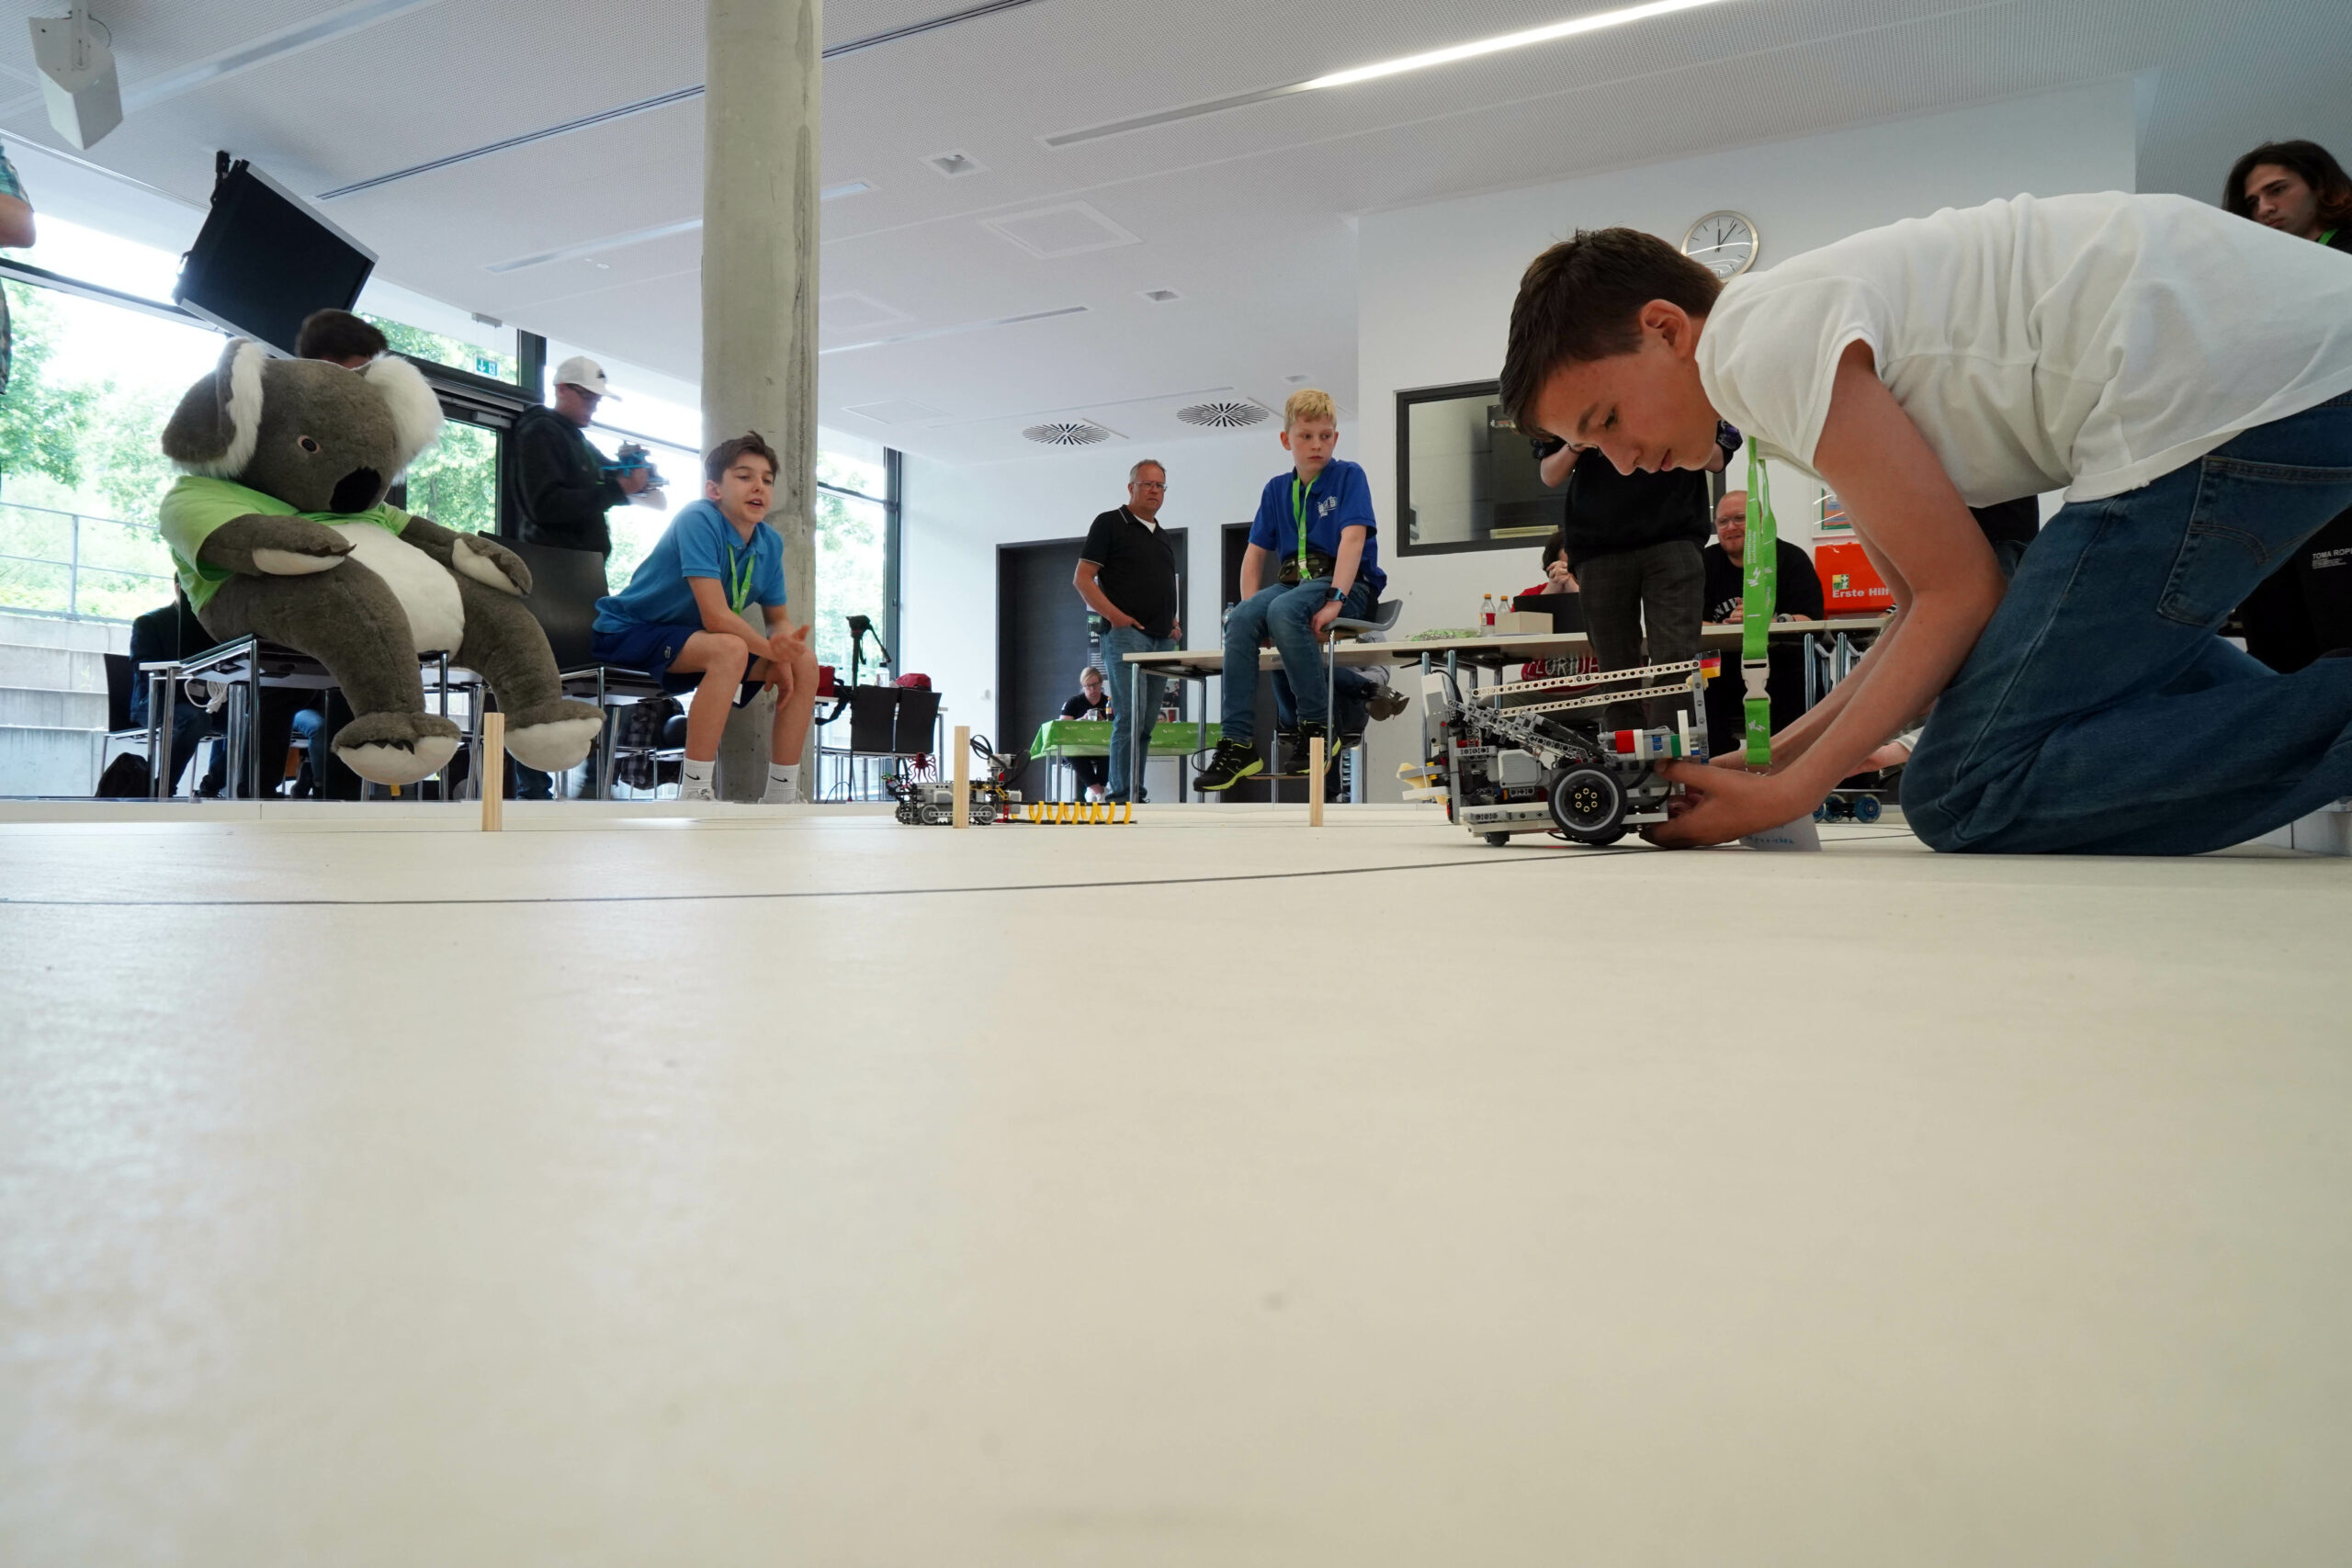 An der Westfälischen Hochschule in Gelsenkirchen fand die „Robocom“, ein Roboter-Wettbewerb für Schüler, statt.